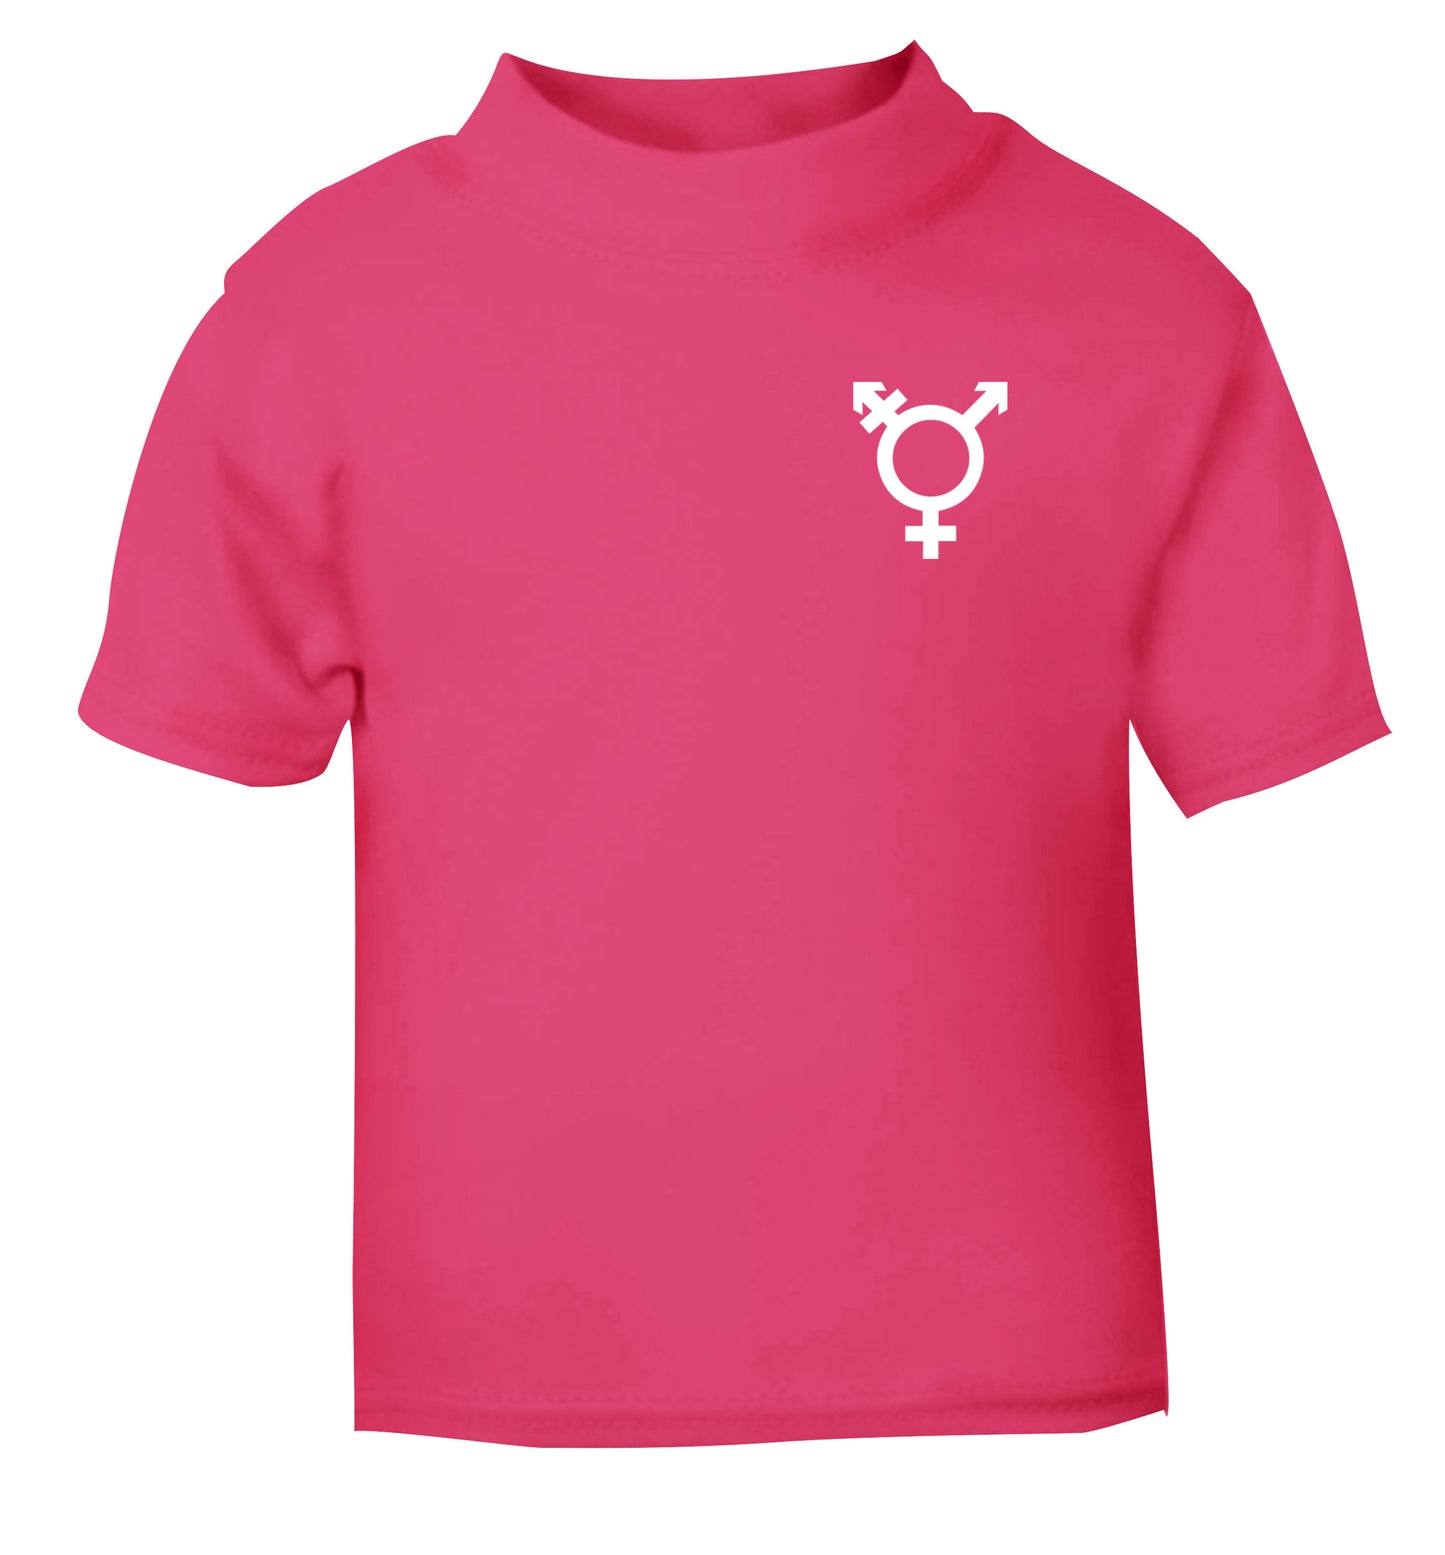 Trans gender symbol pocket pink Baby Toddler Tshirt 2 Years